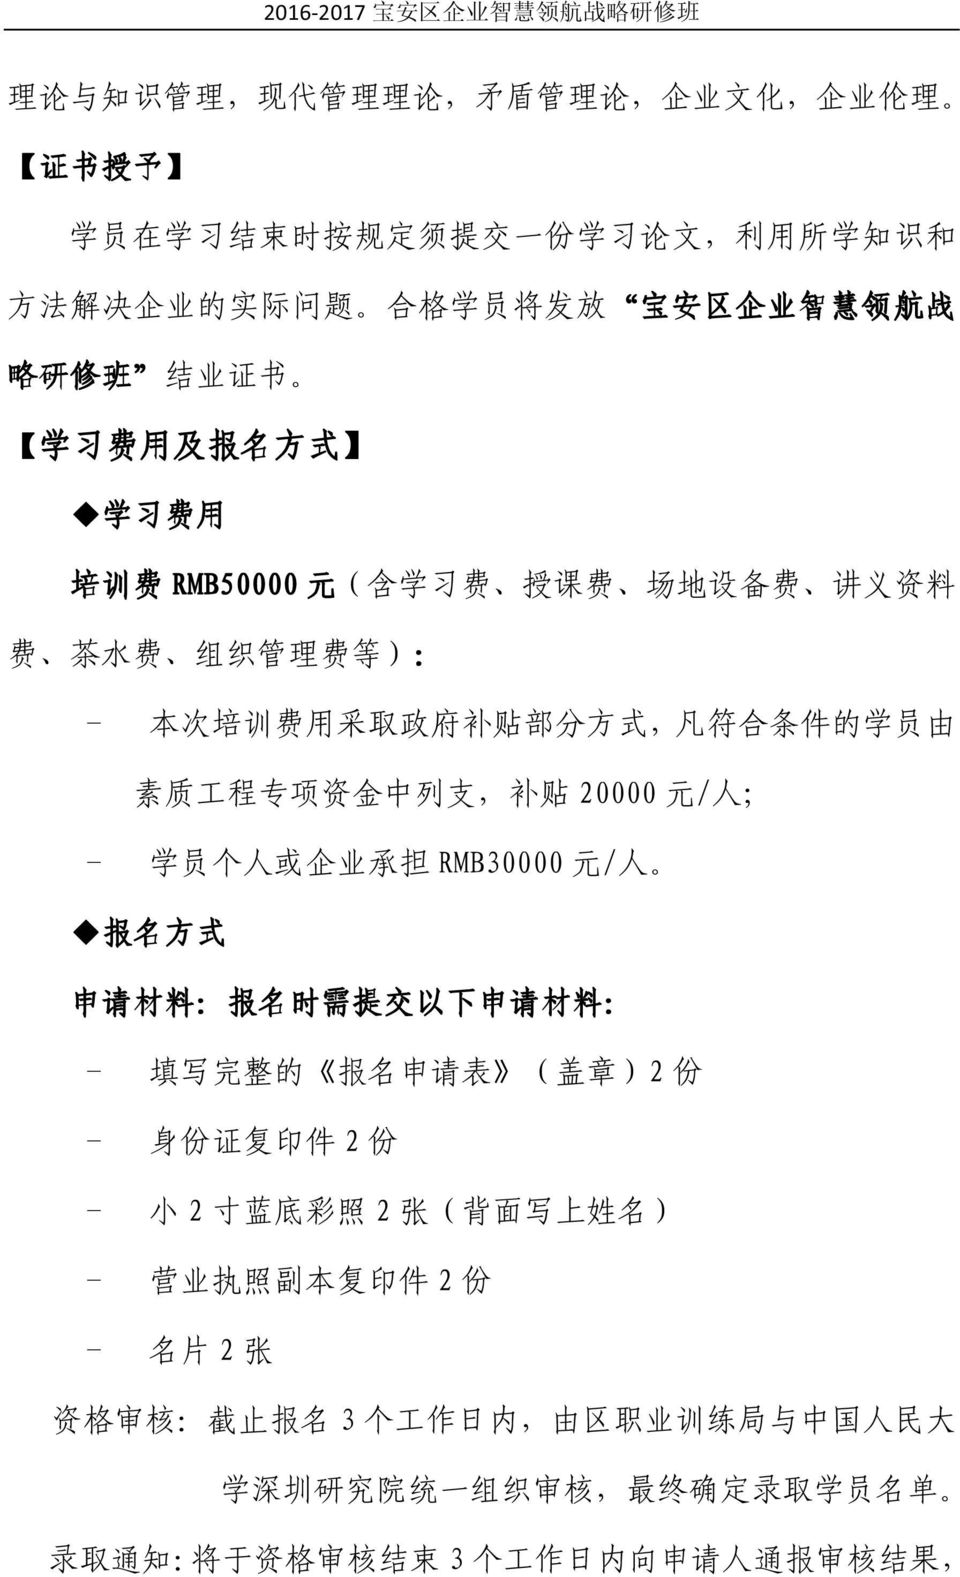 20000 元 / 人 ; - 学 员 个 人 或 企 业 承 担 RMB30000 元 / 人 报 名 方 式 申 请 材 料 : 报 名 时 需 提 交 以 下 申 请 材 料 : - 填 写 完 整 的 报 名 申 请 表 ( 盖 章 )2 份 - 身 份 证 复 印 件 2 份 - 小 2 寸 蓝 底 彩 照 2 张 ( 背 面 写 上 姓 名 ) - 营 业